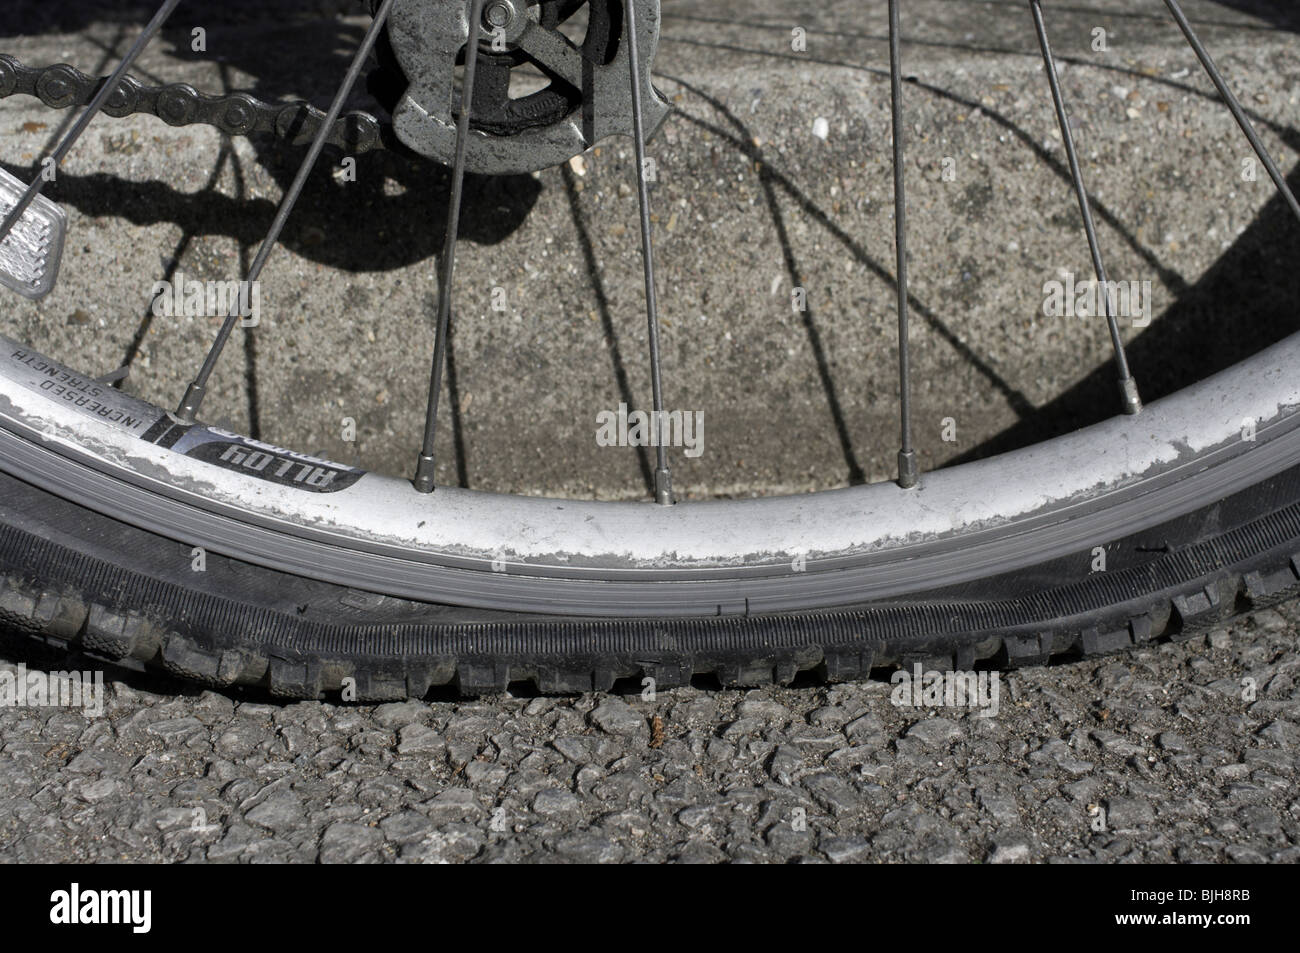 Vélo : adieu les crevaisons avec le pneu à trous et le pneu plein !